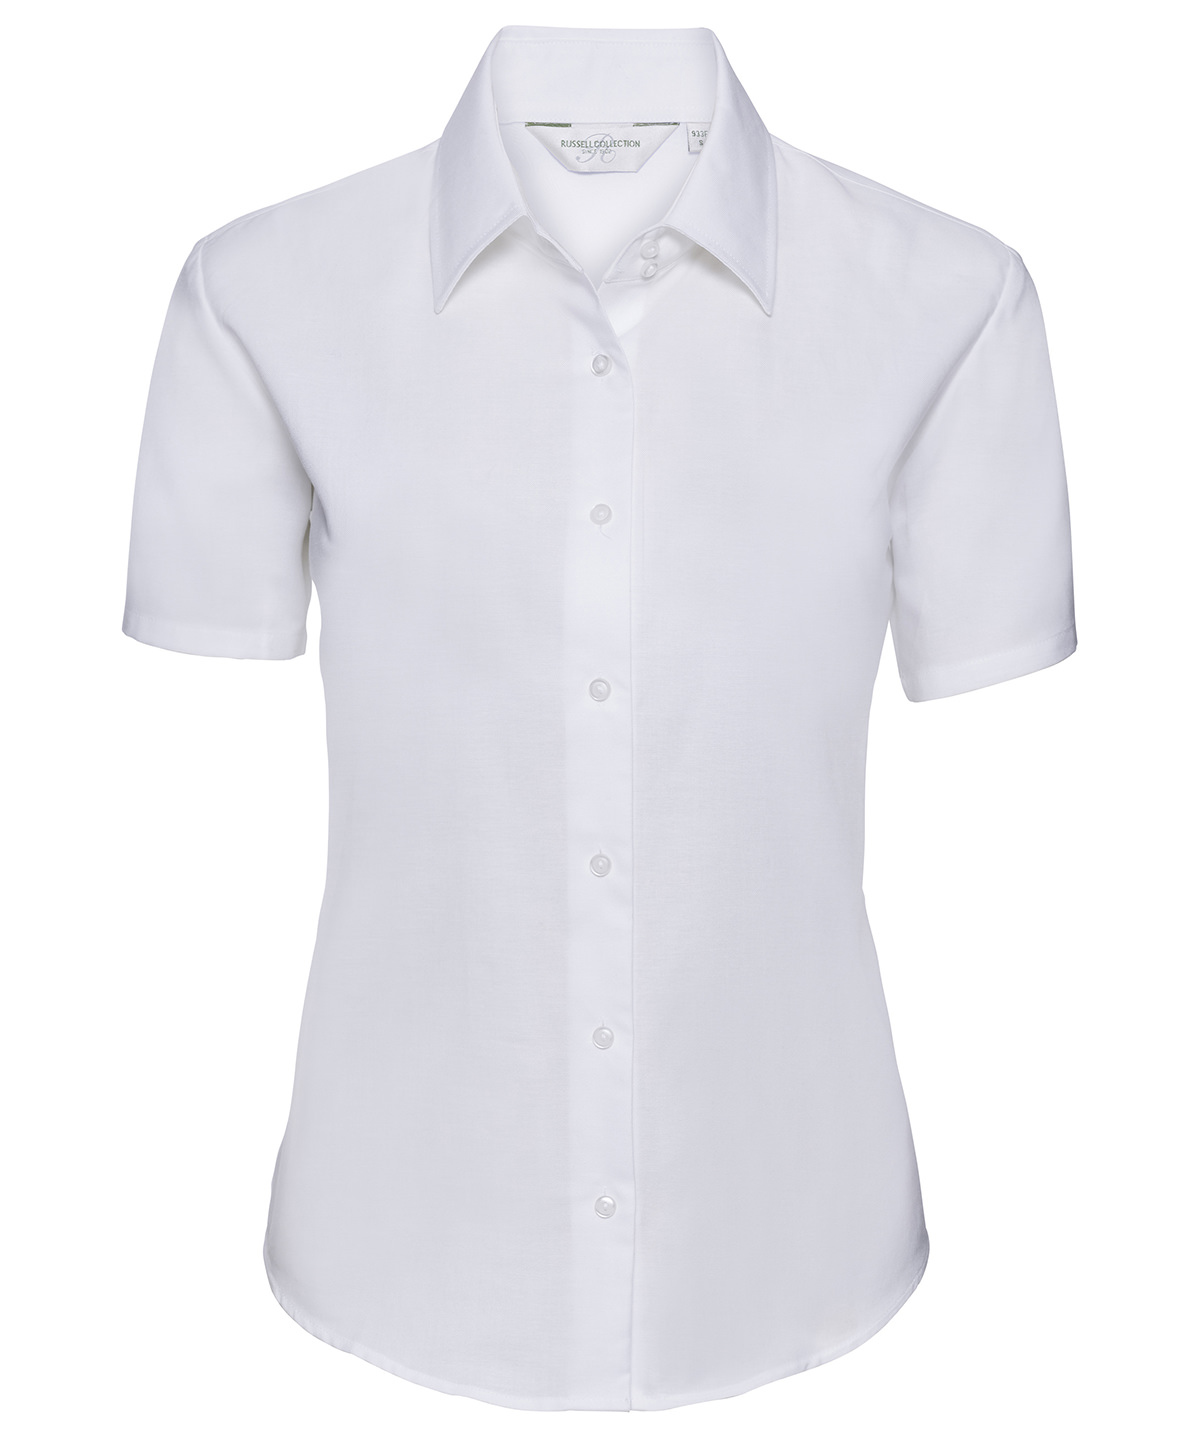 Women's short sleeve Oxford shirt